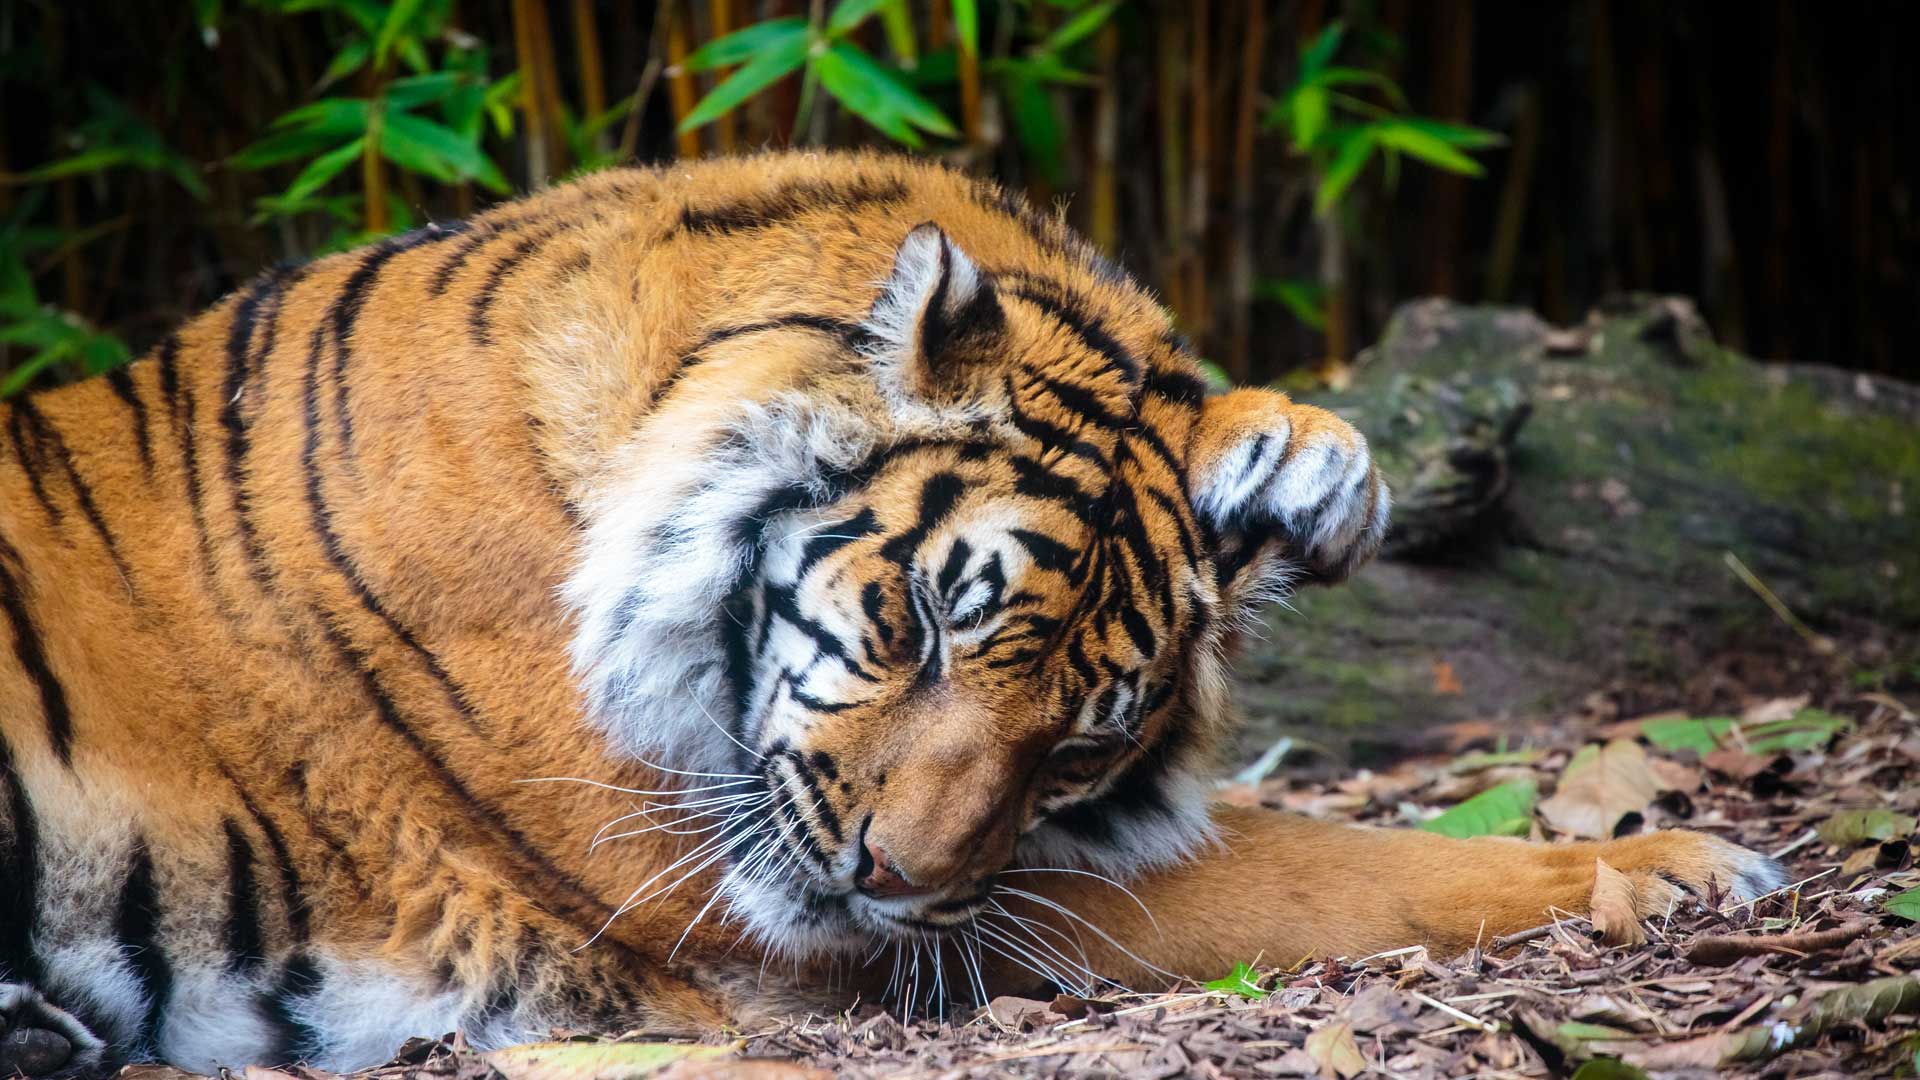 https://cdn.aucklandunlimited.com/zoo/assets/media/sumatran-tiger-gallery-8.jpg